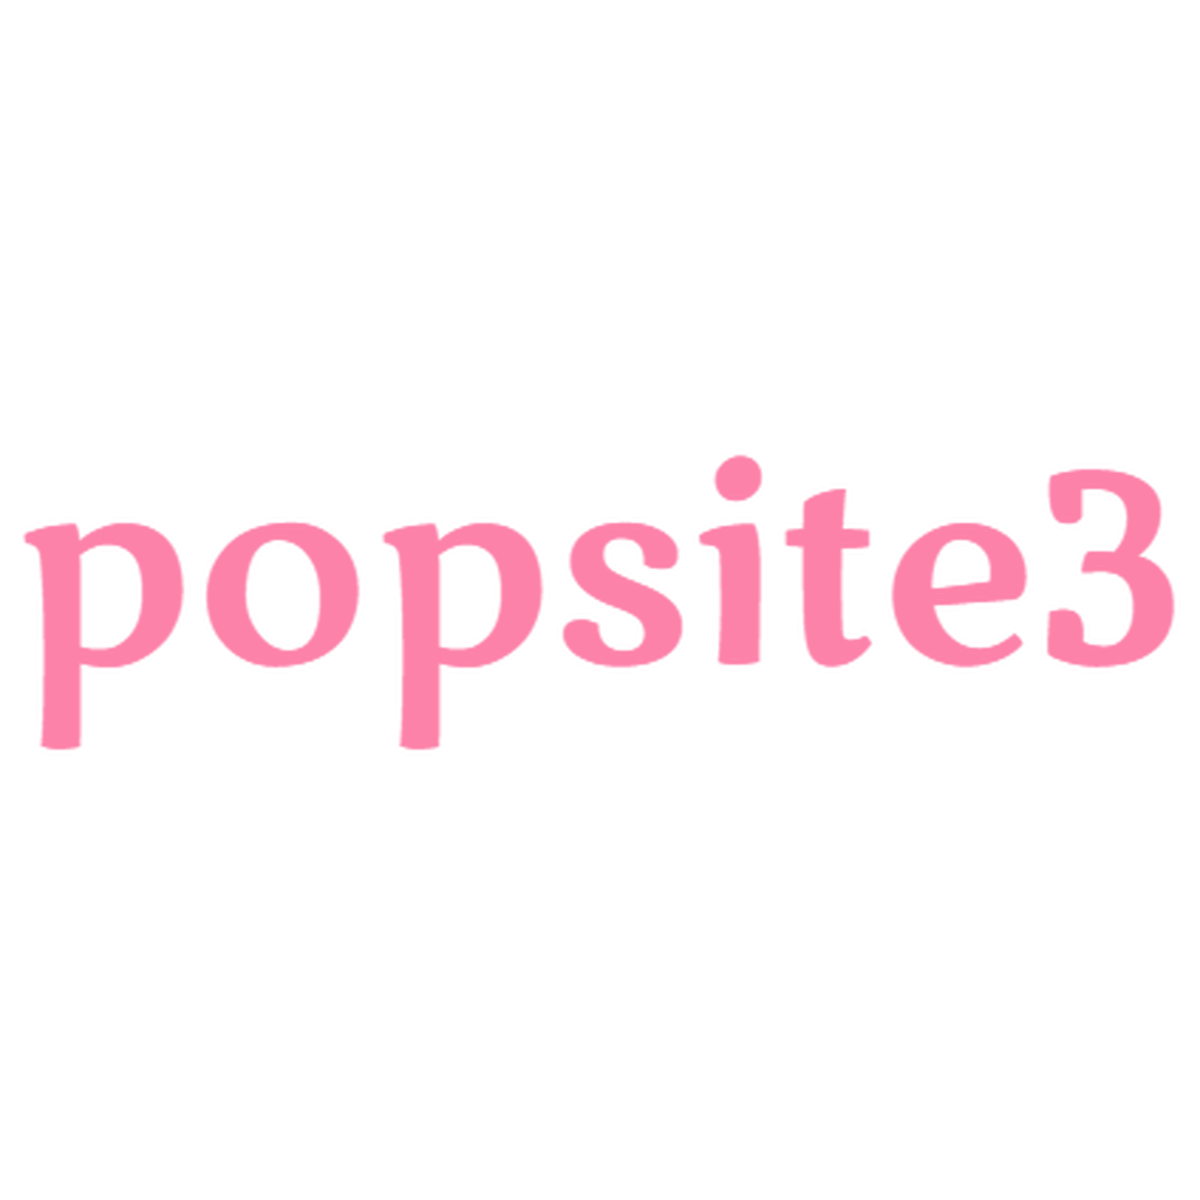 アウター Popsite3 レディース メンズ かわいい 可愛い かっこいい 運動 ダイエット アパレル 服 アクセサリーなど